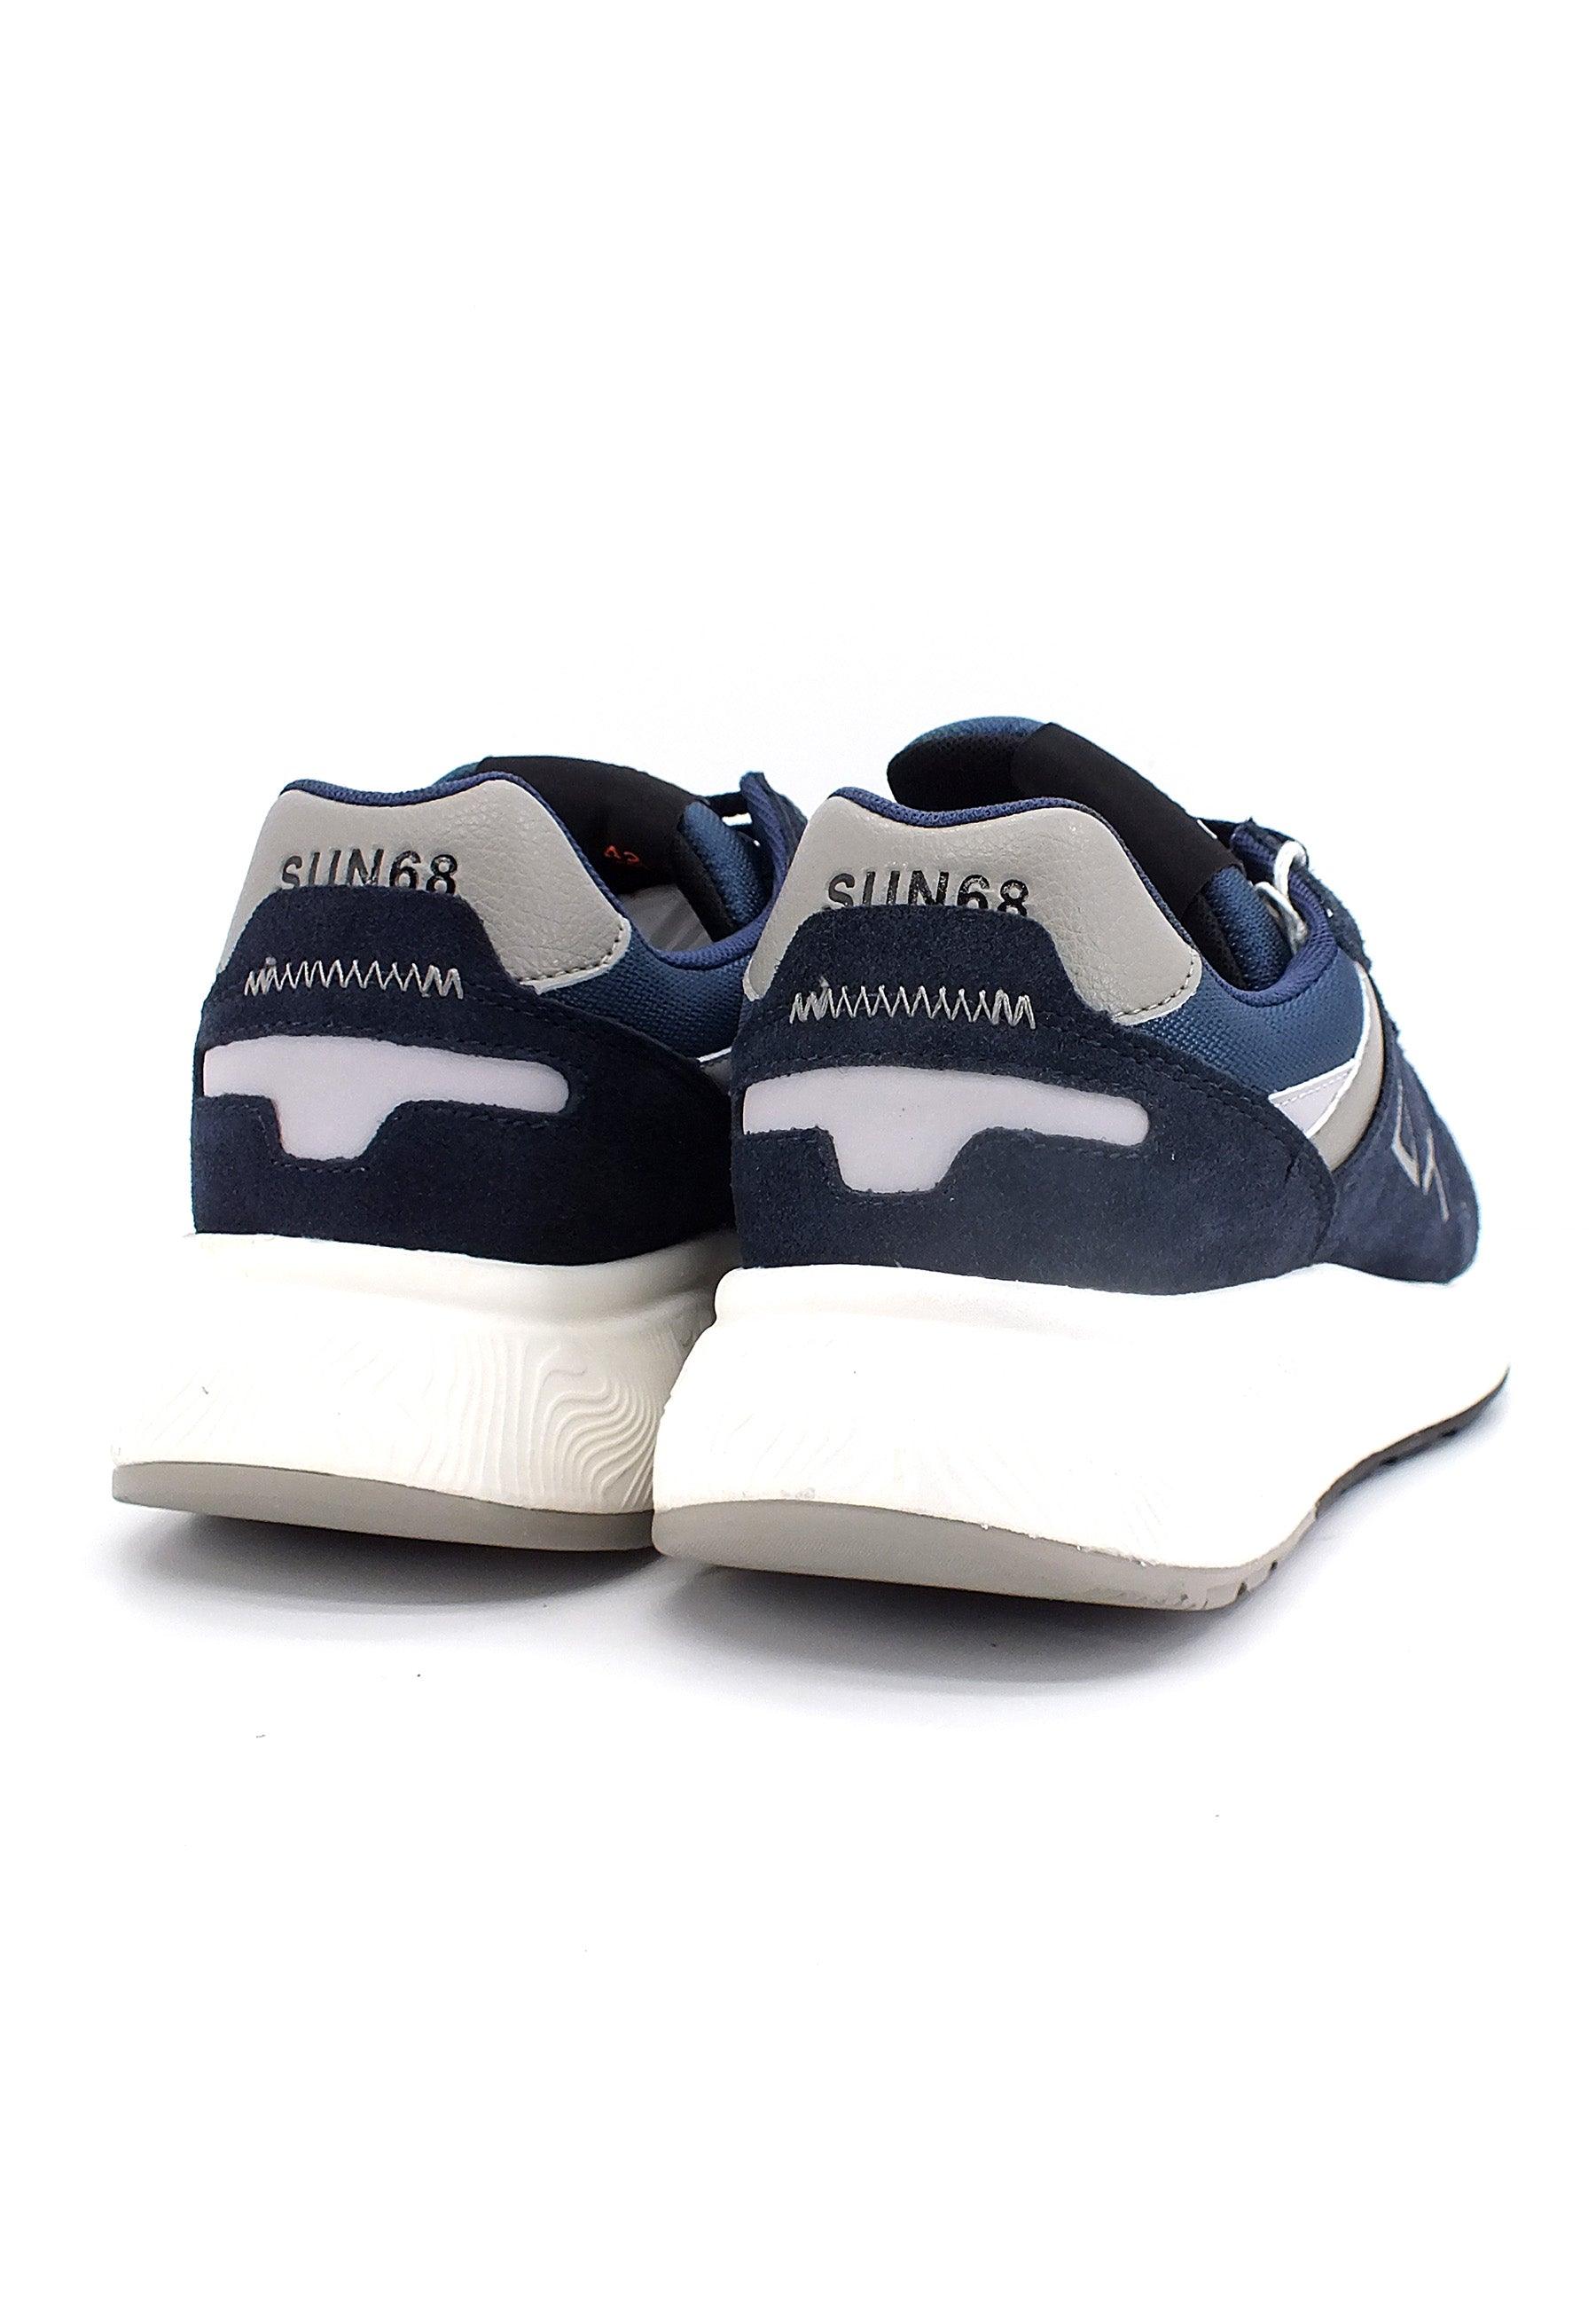 SUN68 Daddy Sneaker Uomo Navy Blue Z42127 - Sandrini Calzature e Abbigliamento